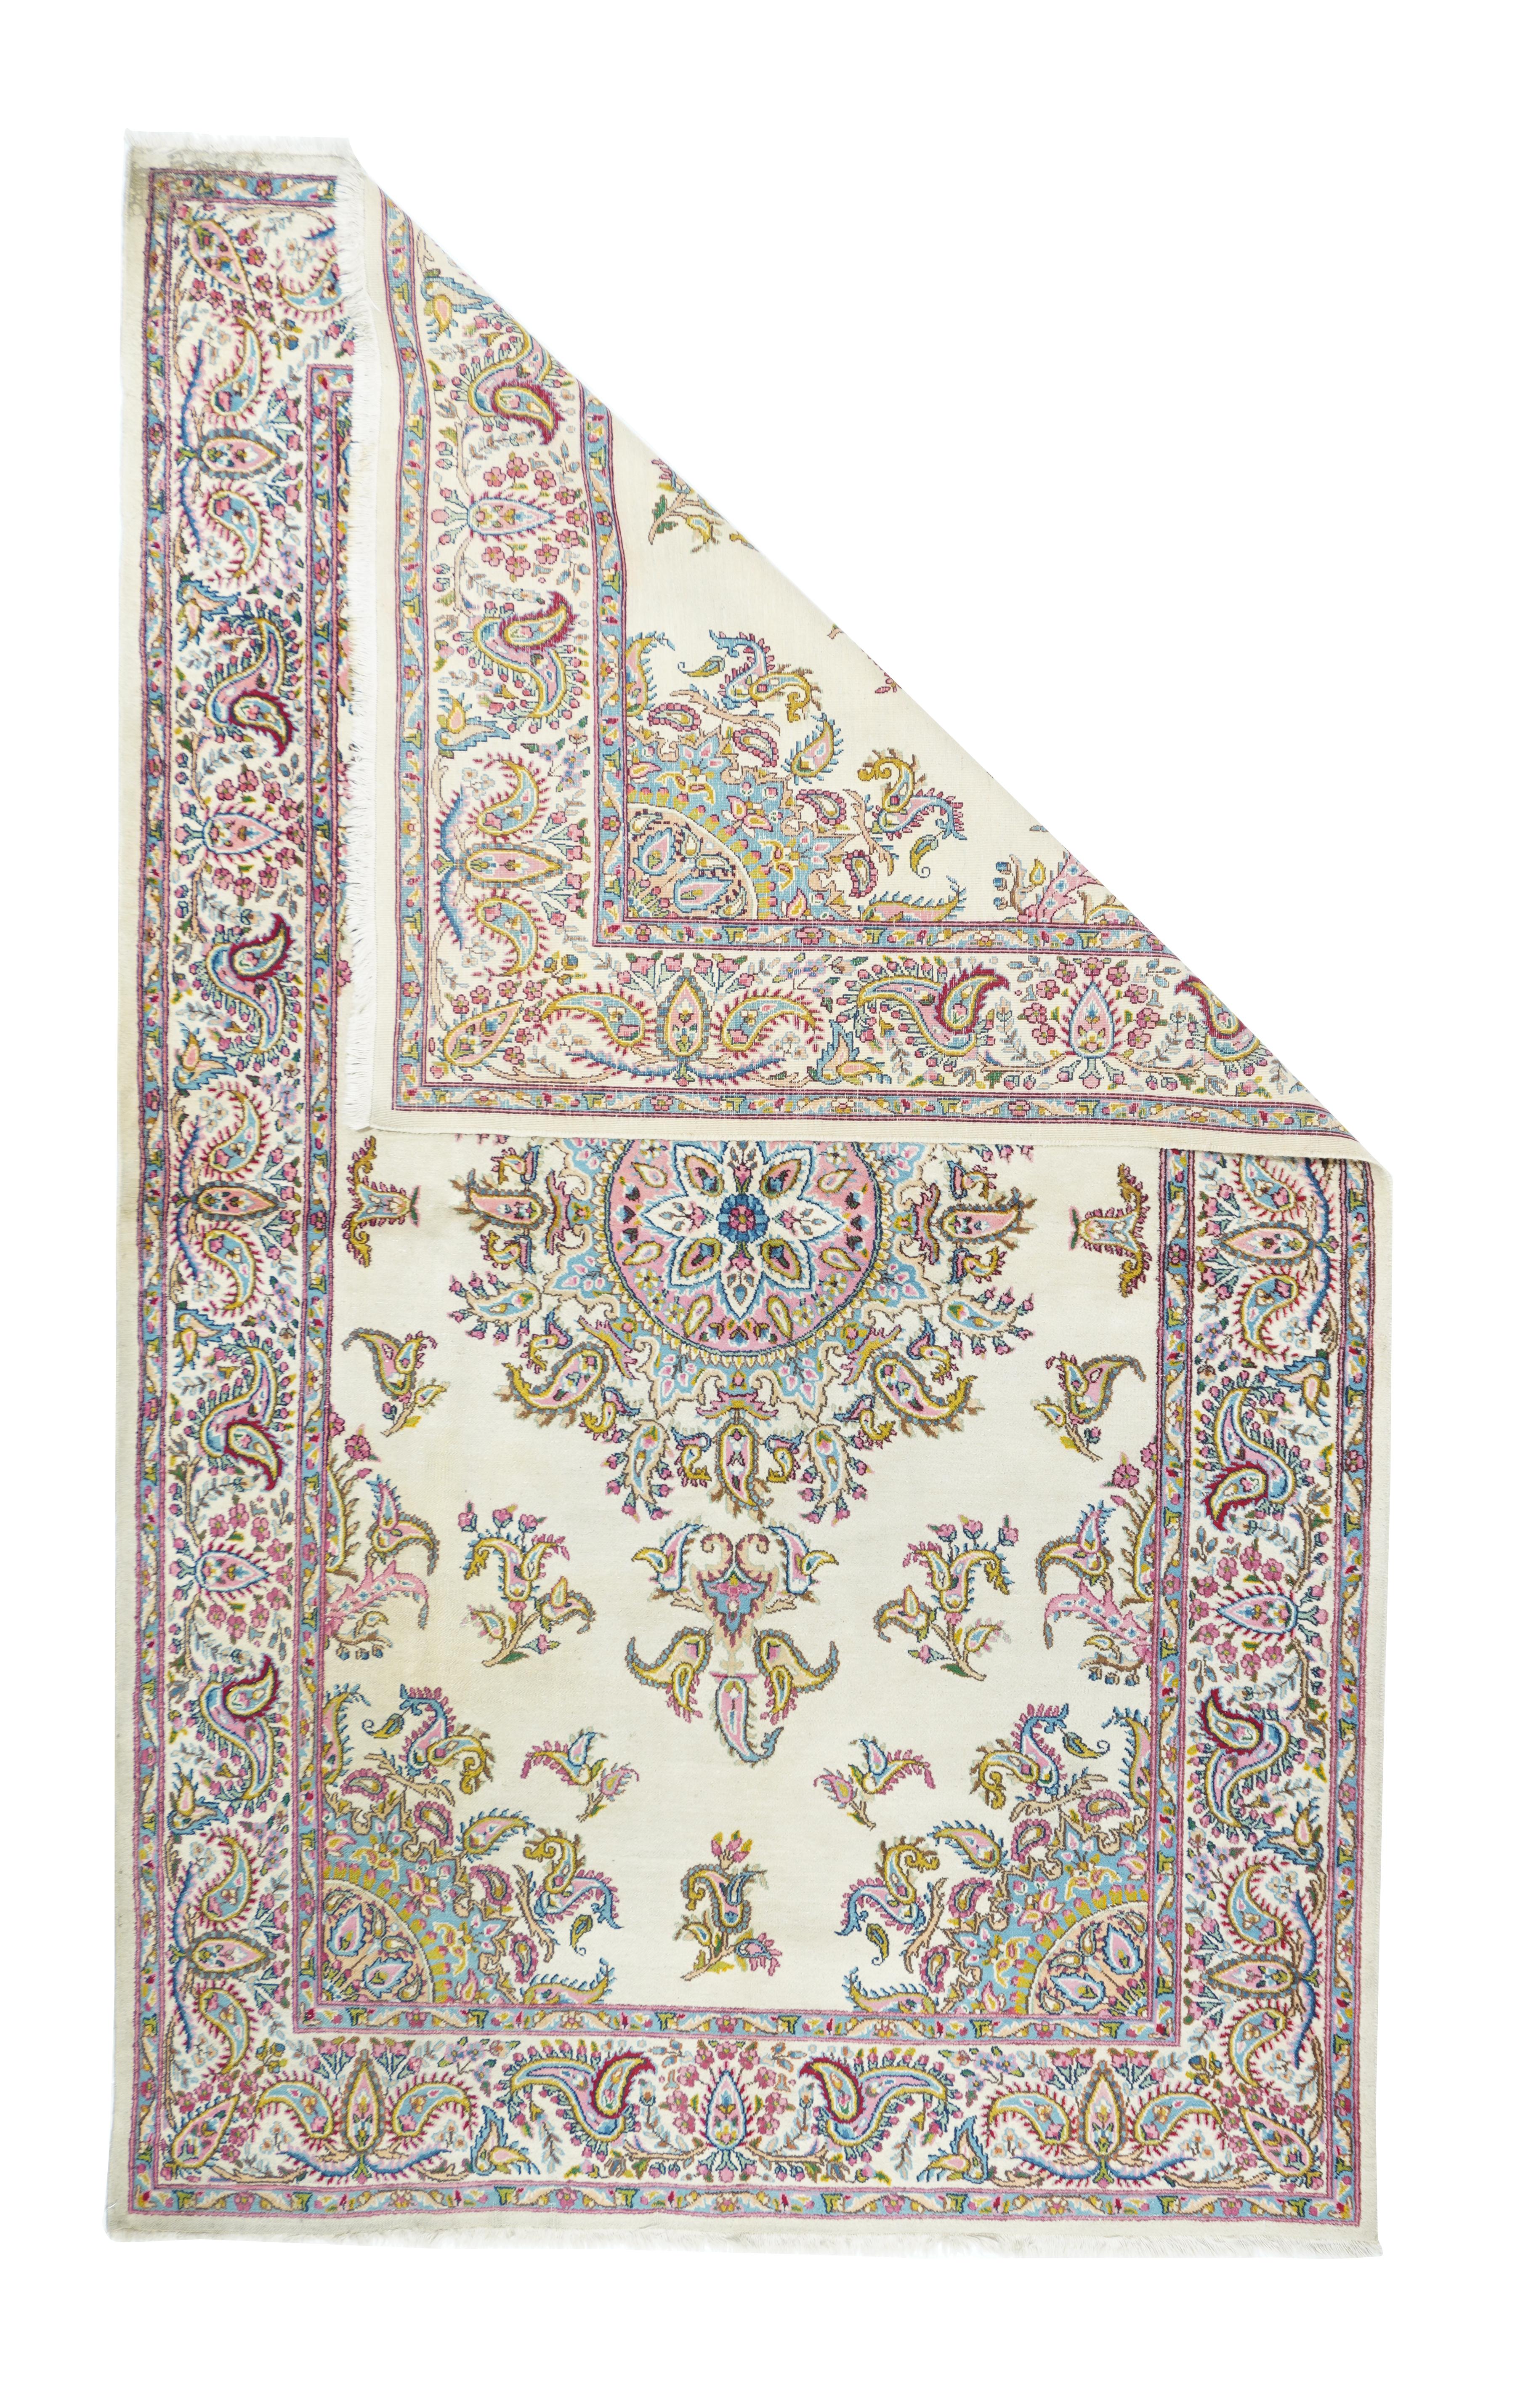 Vintage Kerman rug 5' x 8'5''.